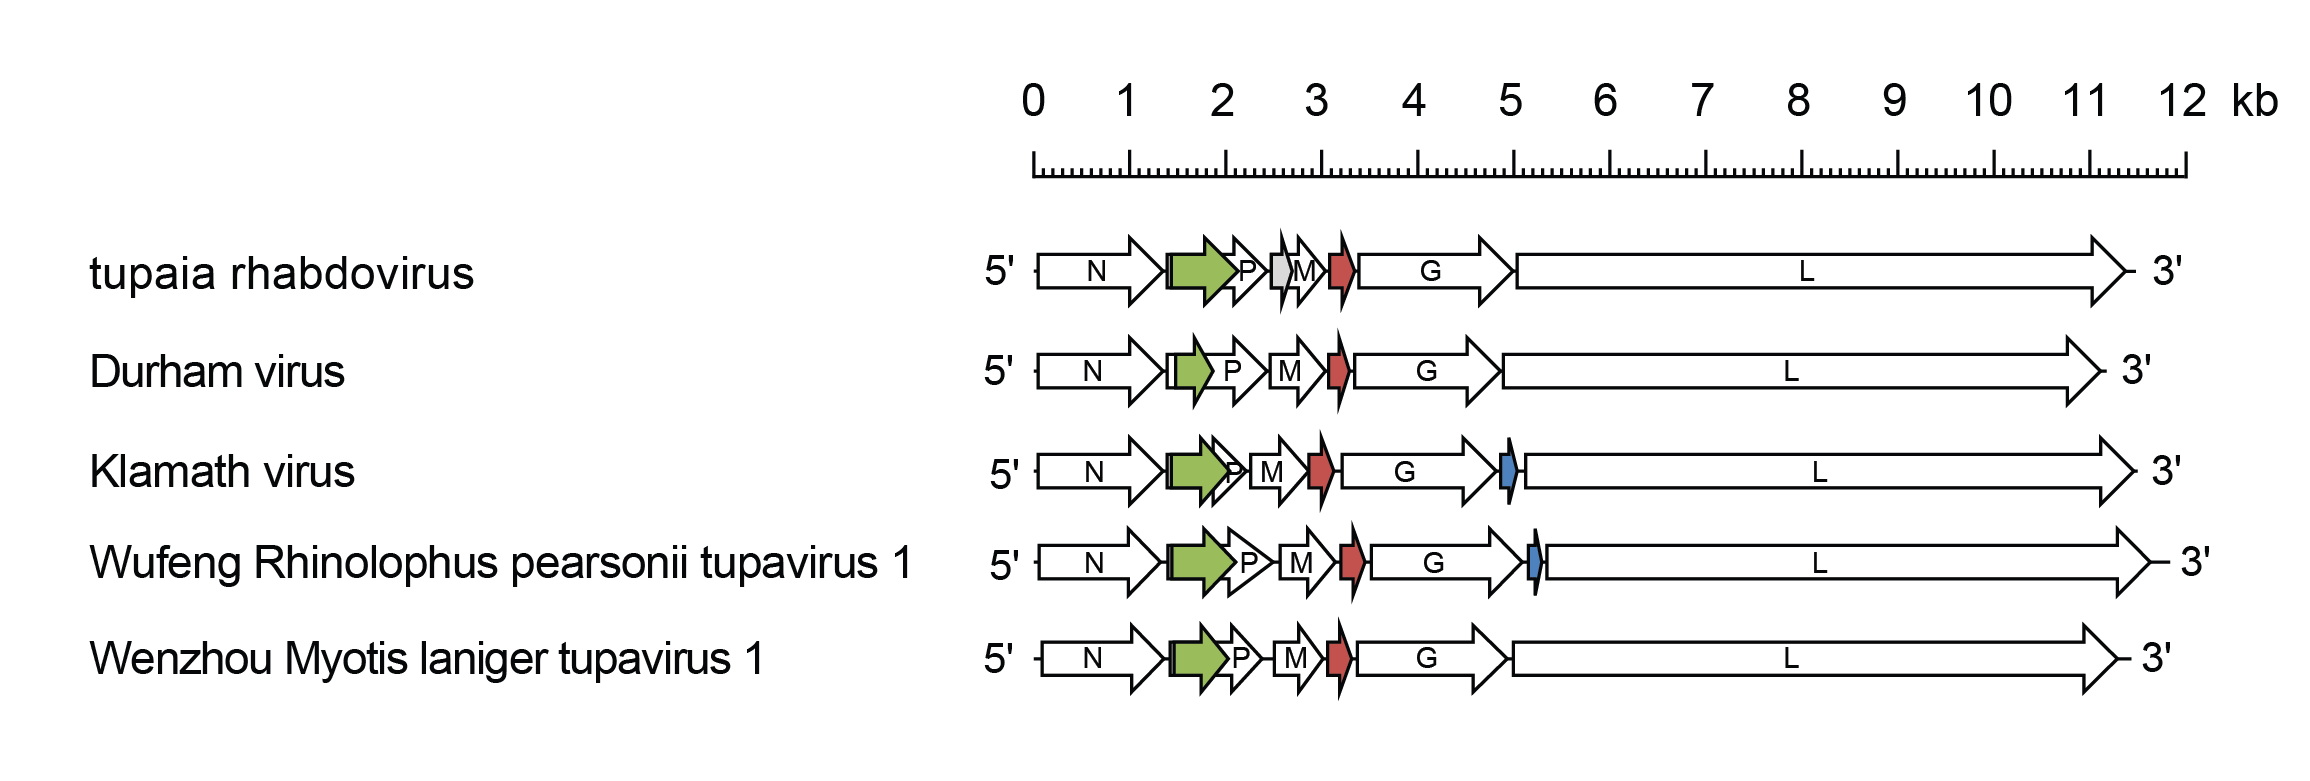 Tupavirus genome